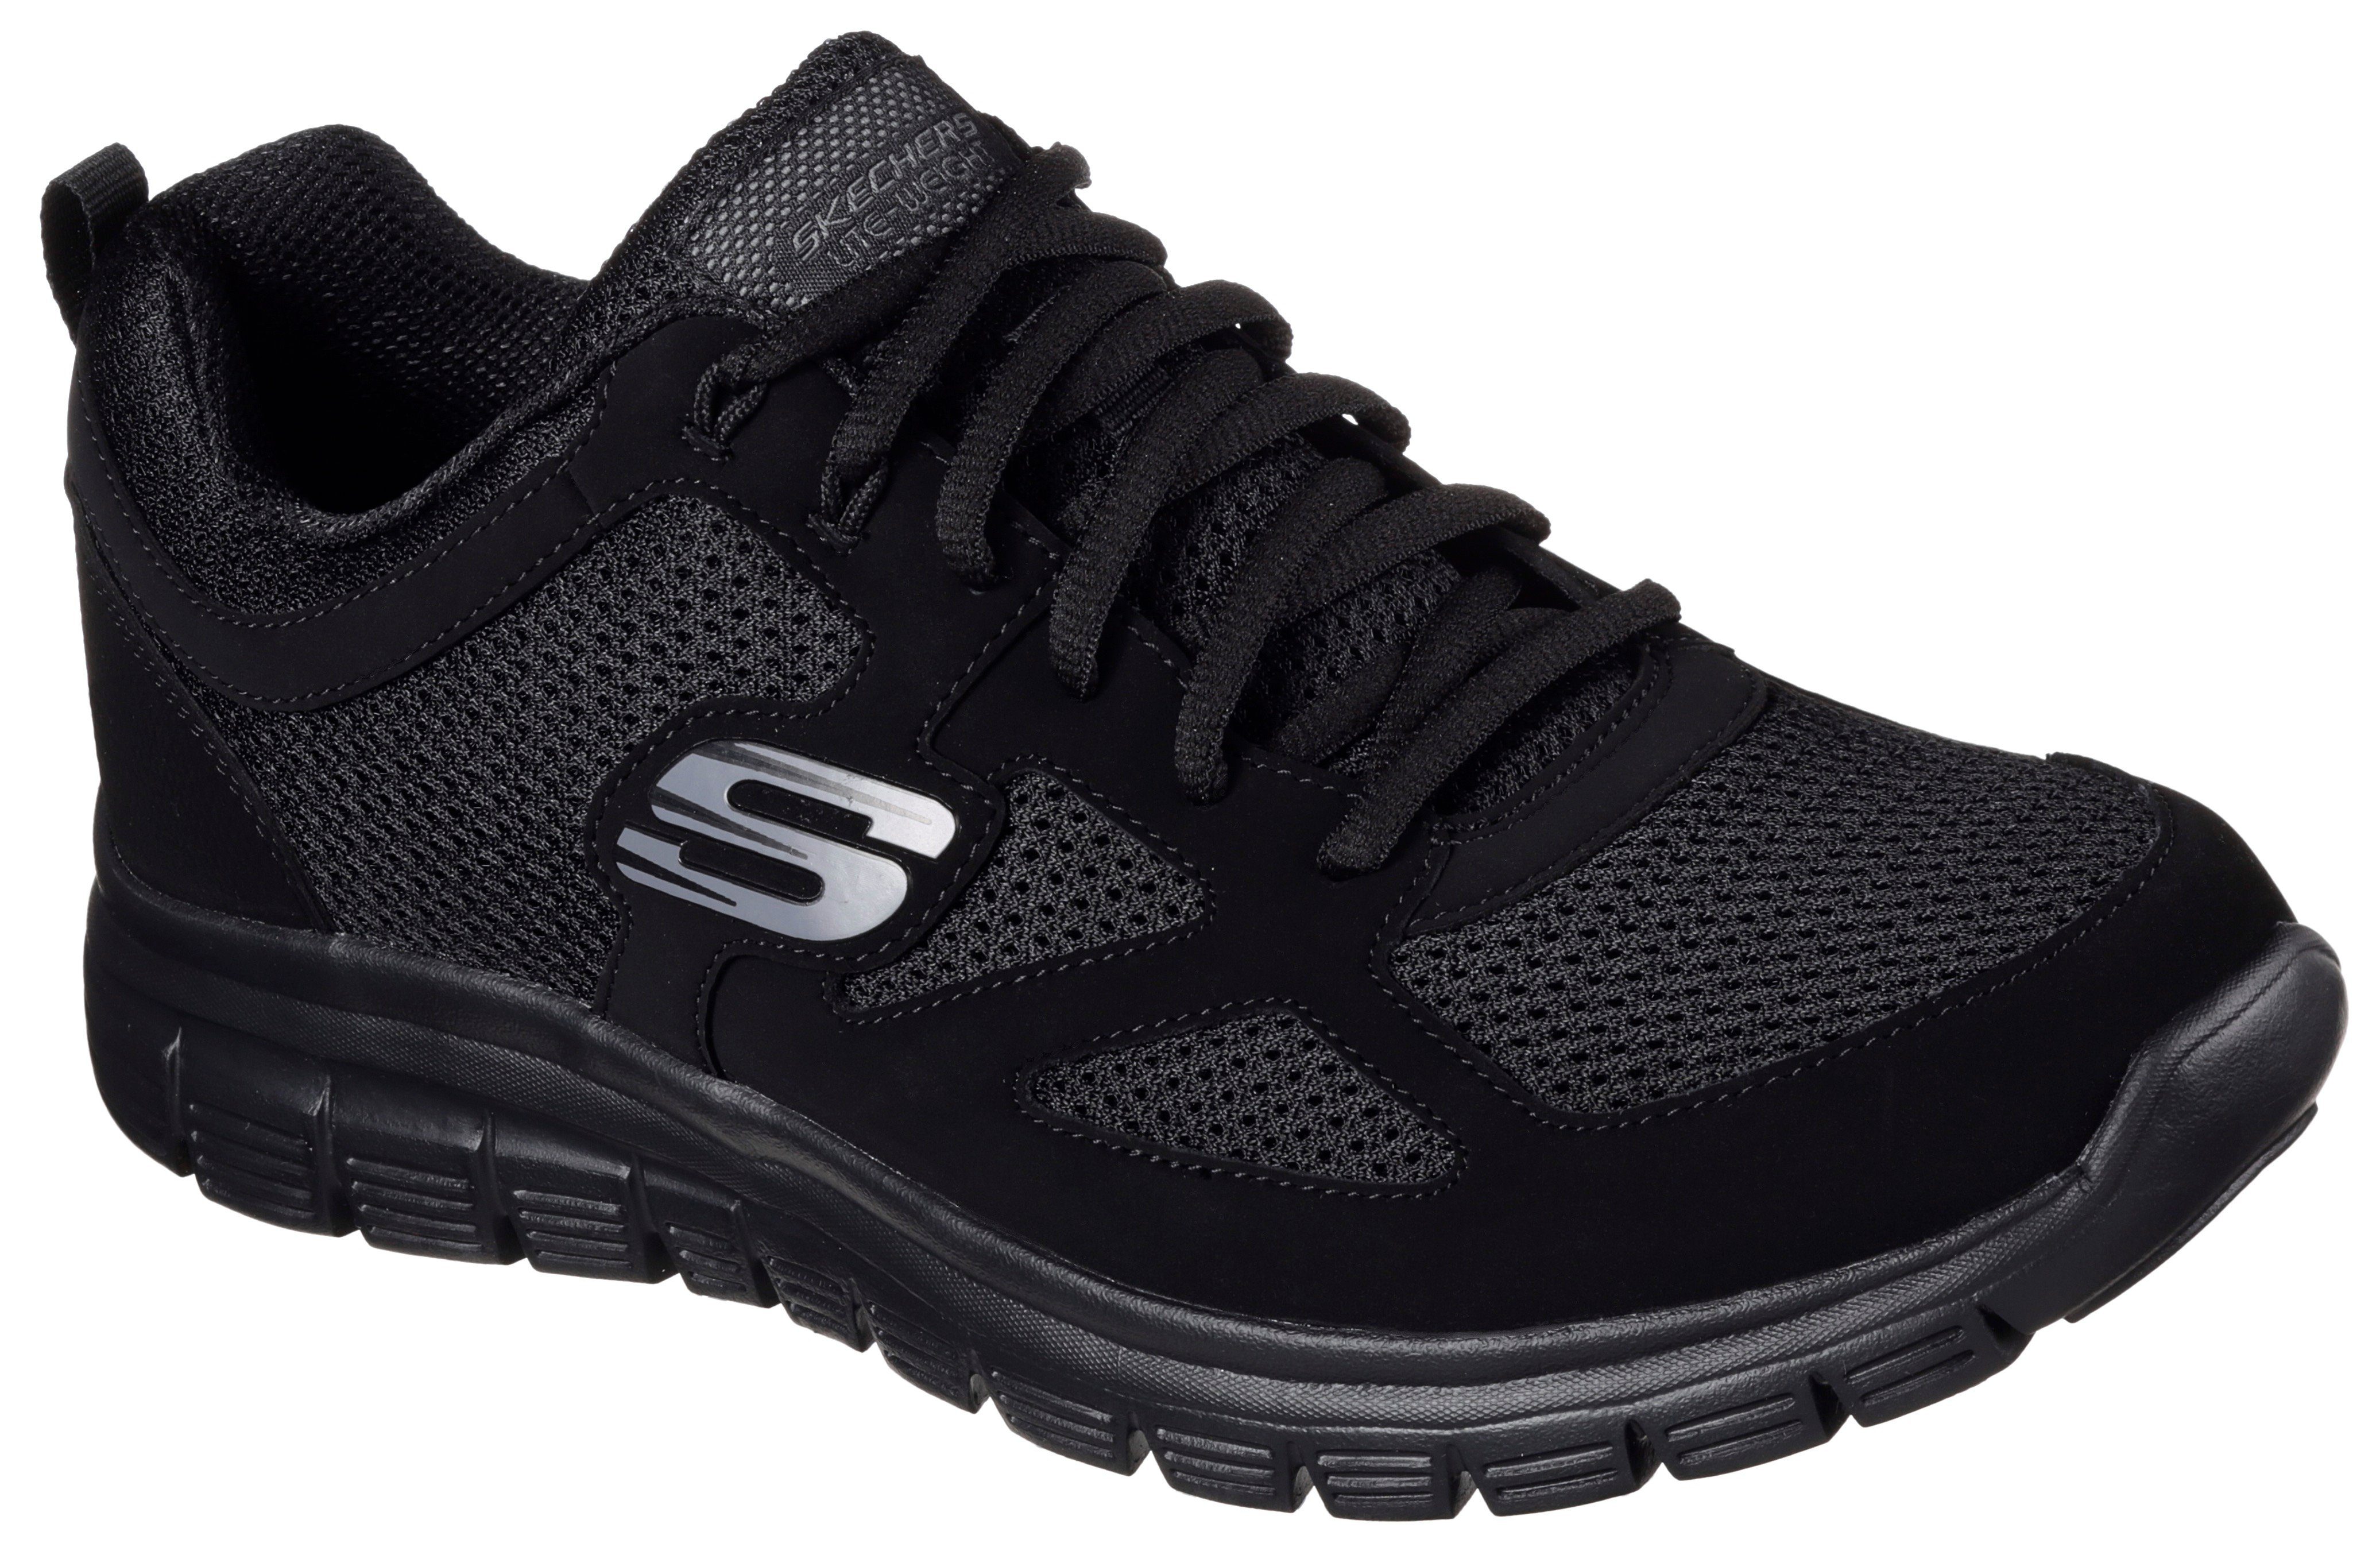 Skechers BURNS-AGOURA monochromen im black/black Look Sneaker